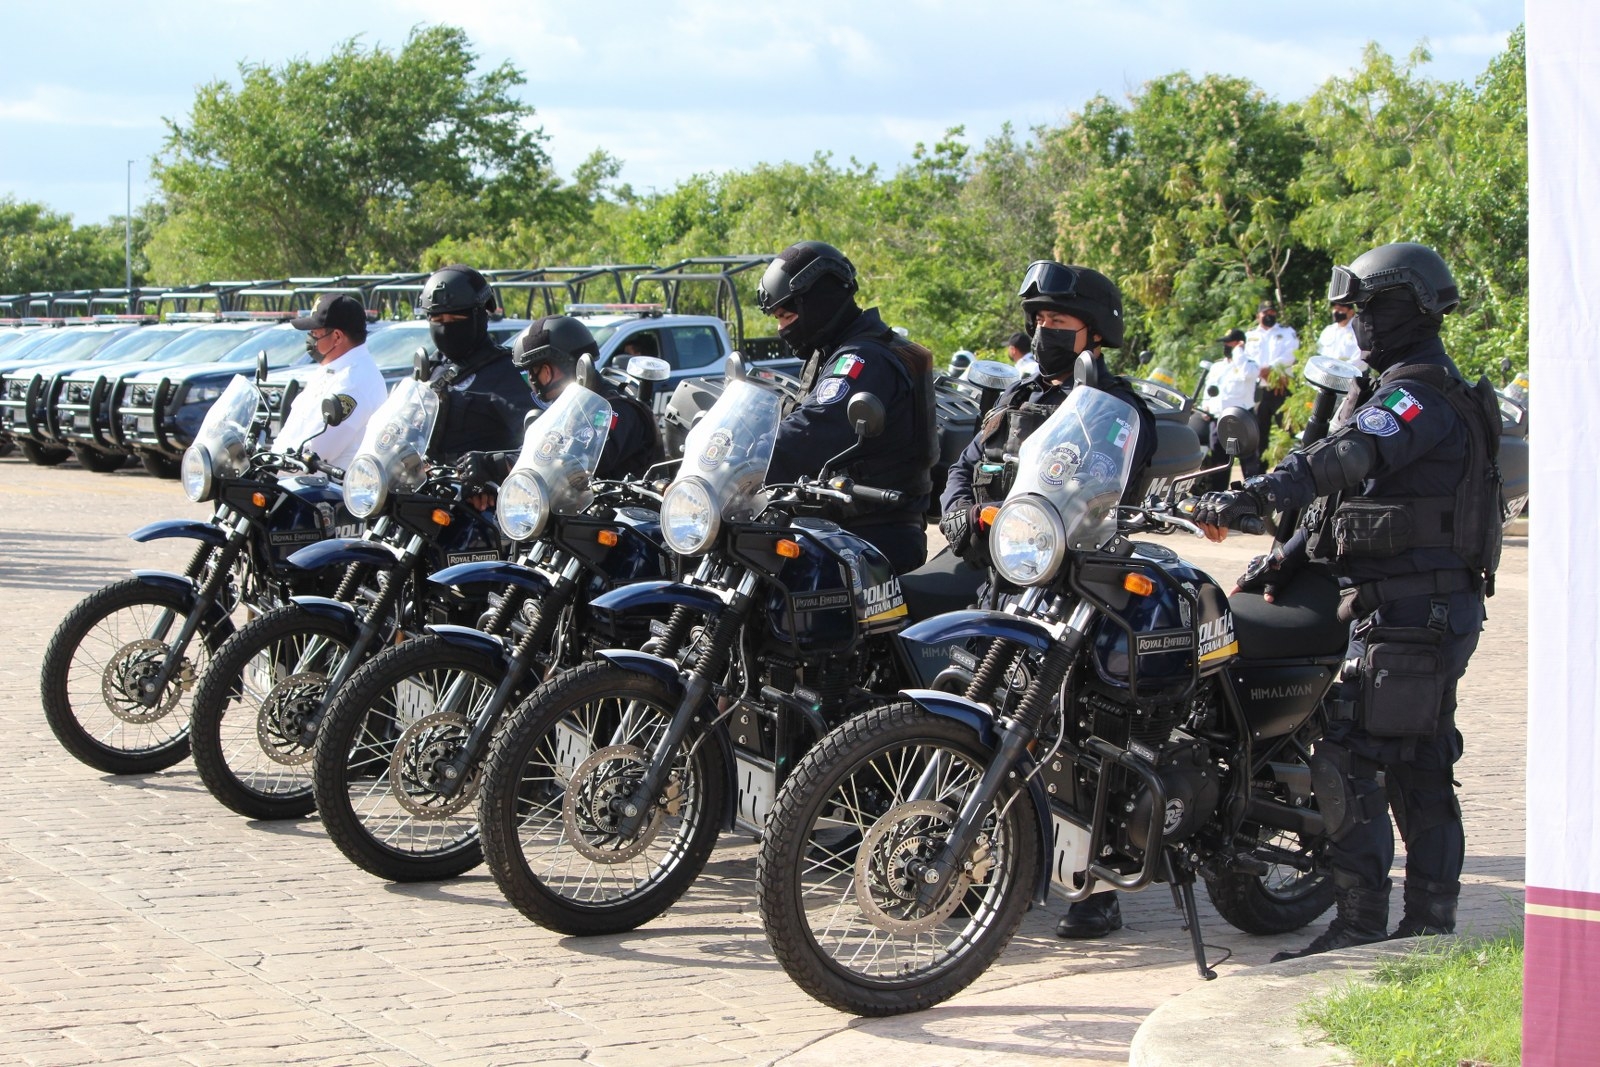 Algunos de los policías acusados de extorsión y abuso de autoridad en Cancún son elementos de Tránsito, reveló la corporación local